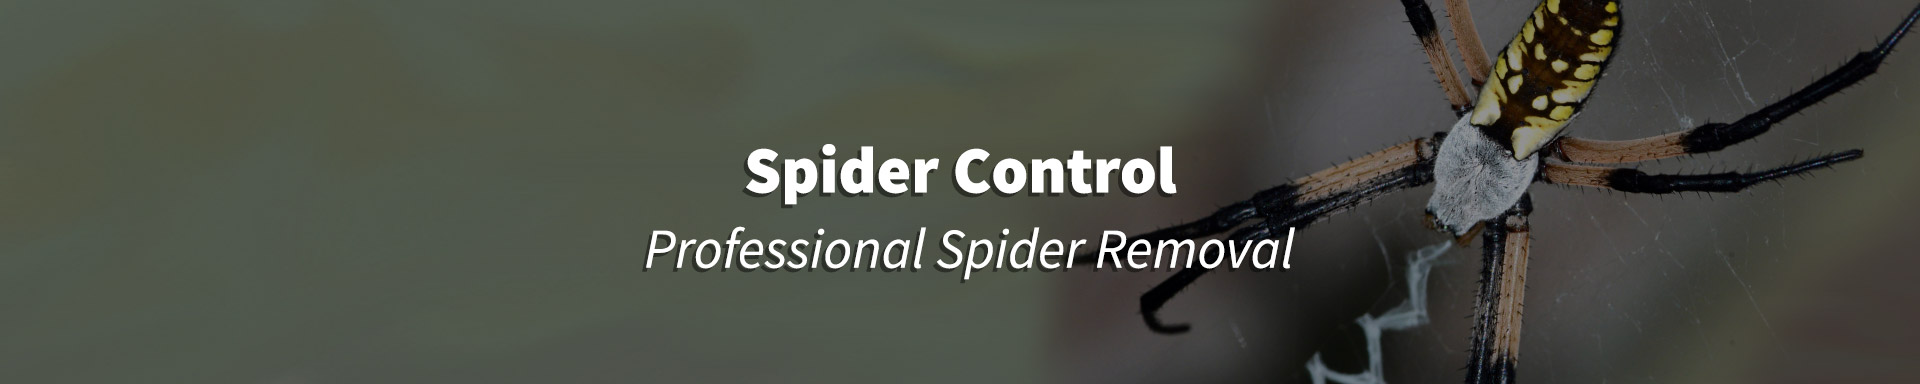 spider control header